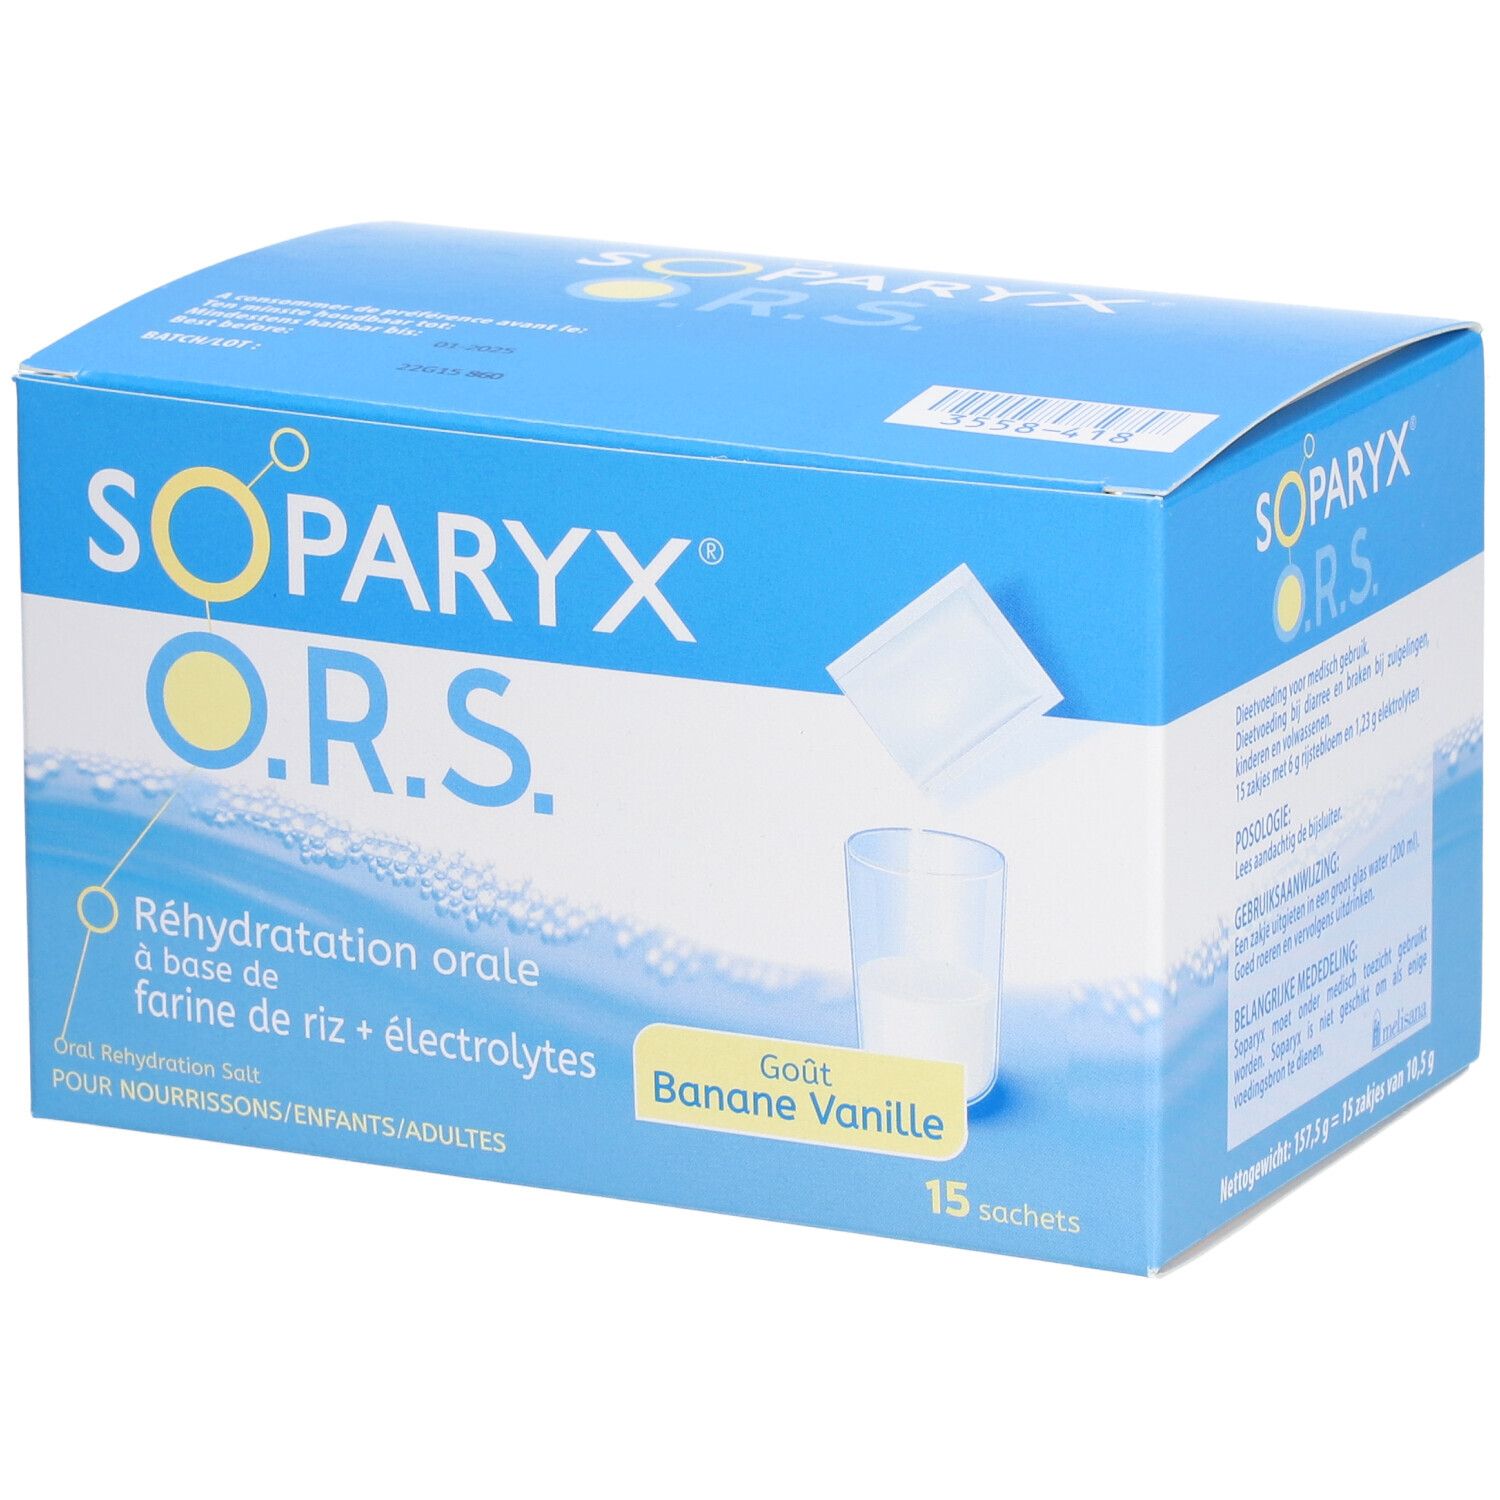 Soparyx® O.r.s.